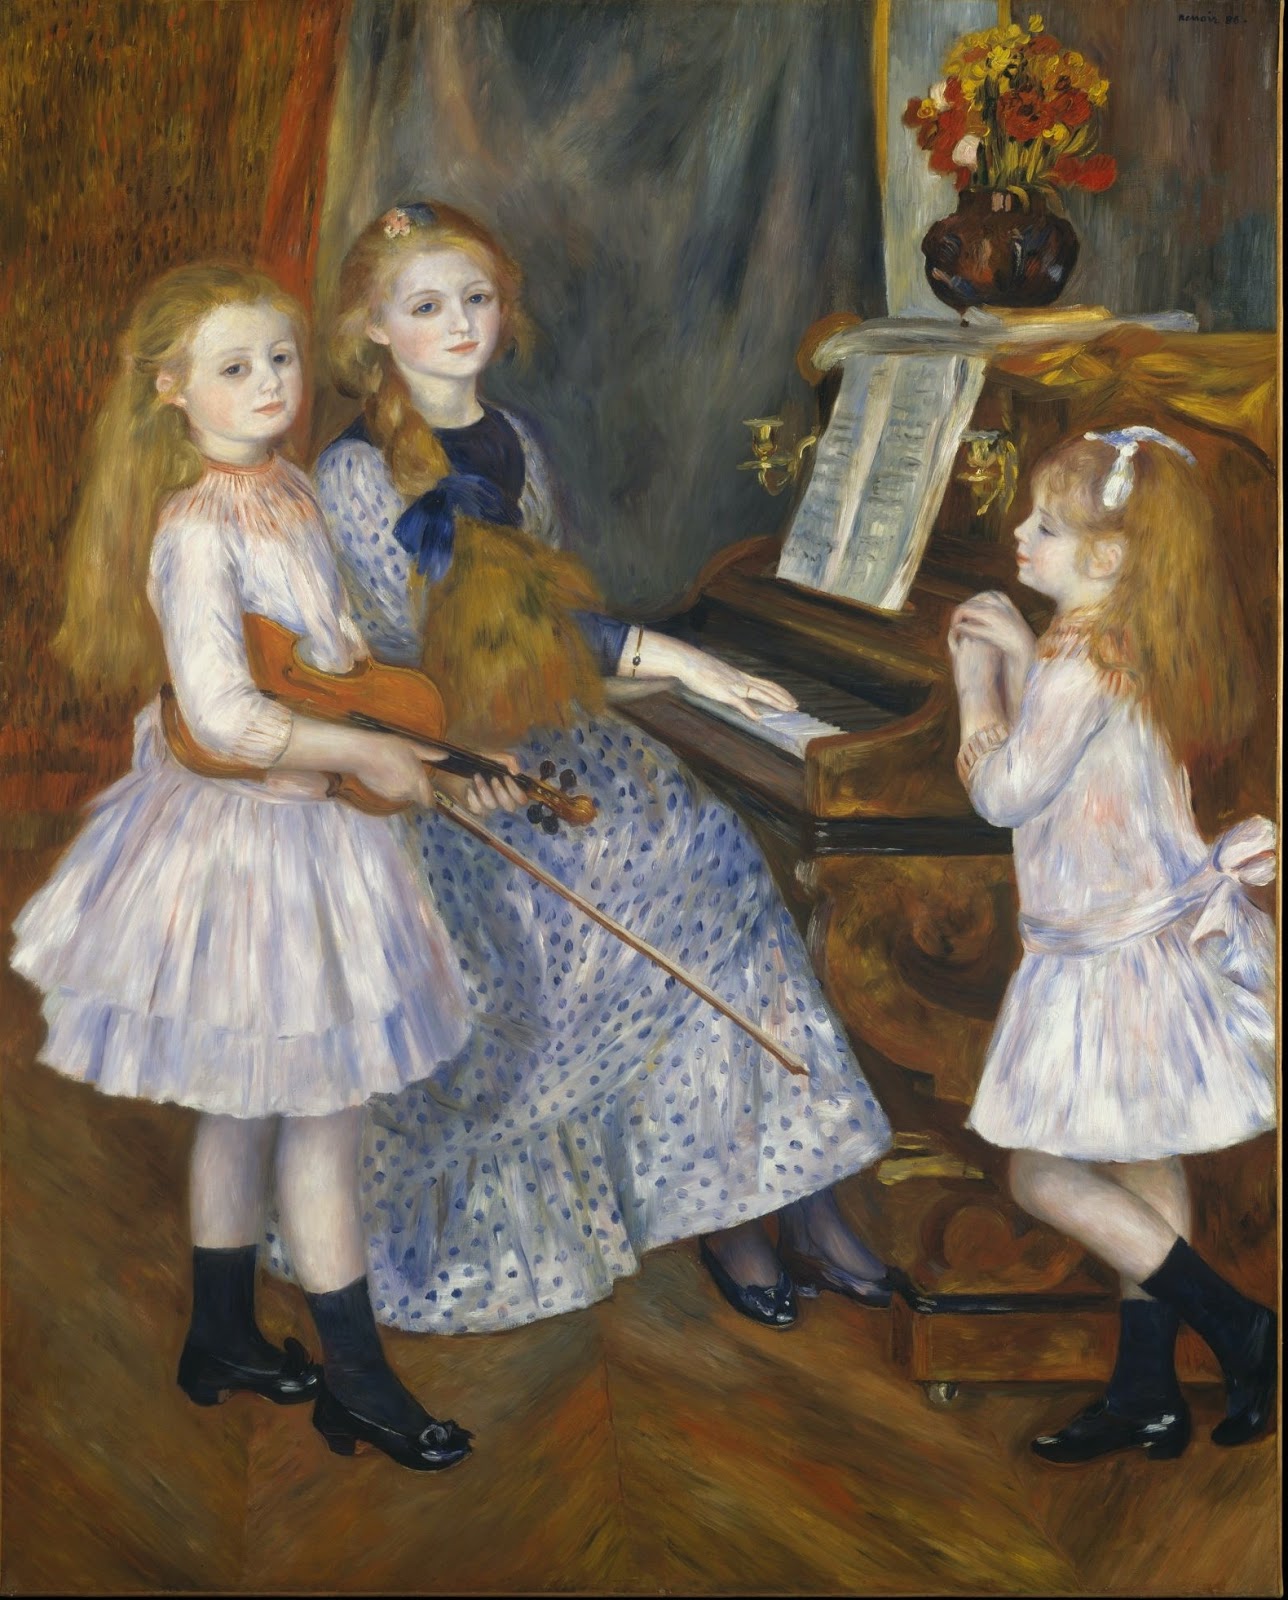 Auguste+Renoir-1841-1919 (4).jpg